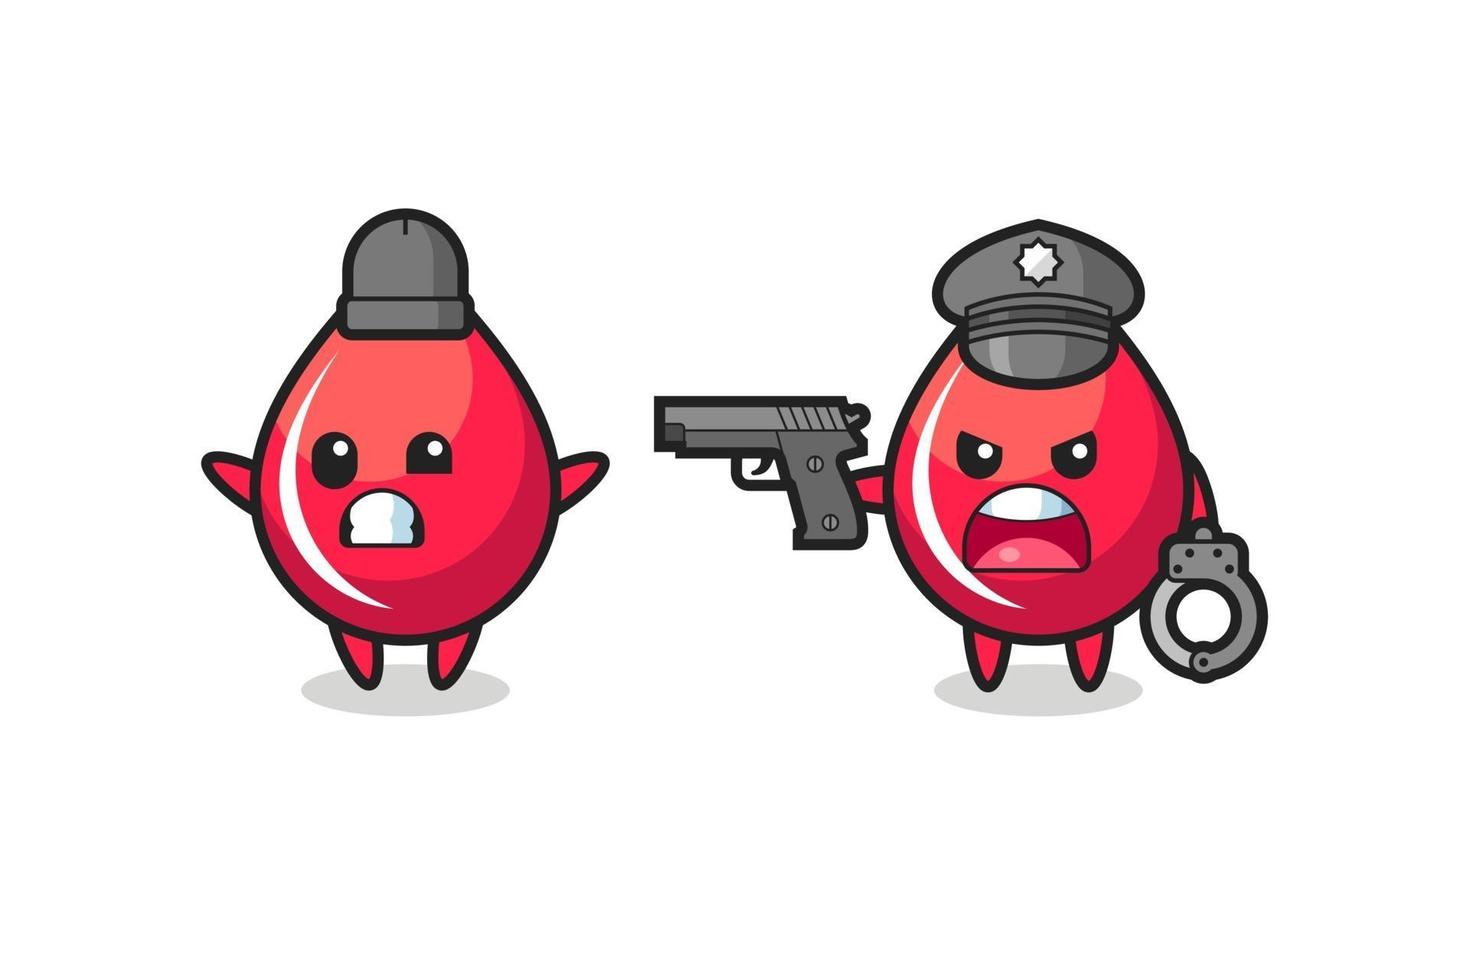 illustratie van bloeddruppelrover met handen omhoog pose gevangen door politie vector